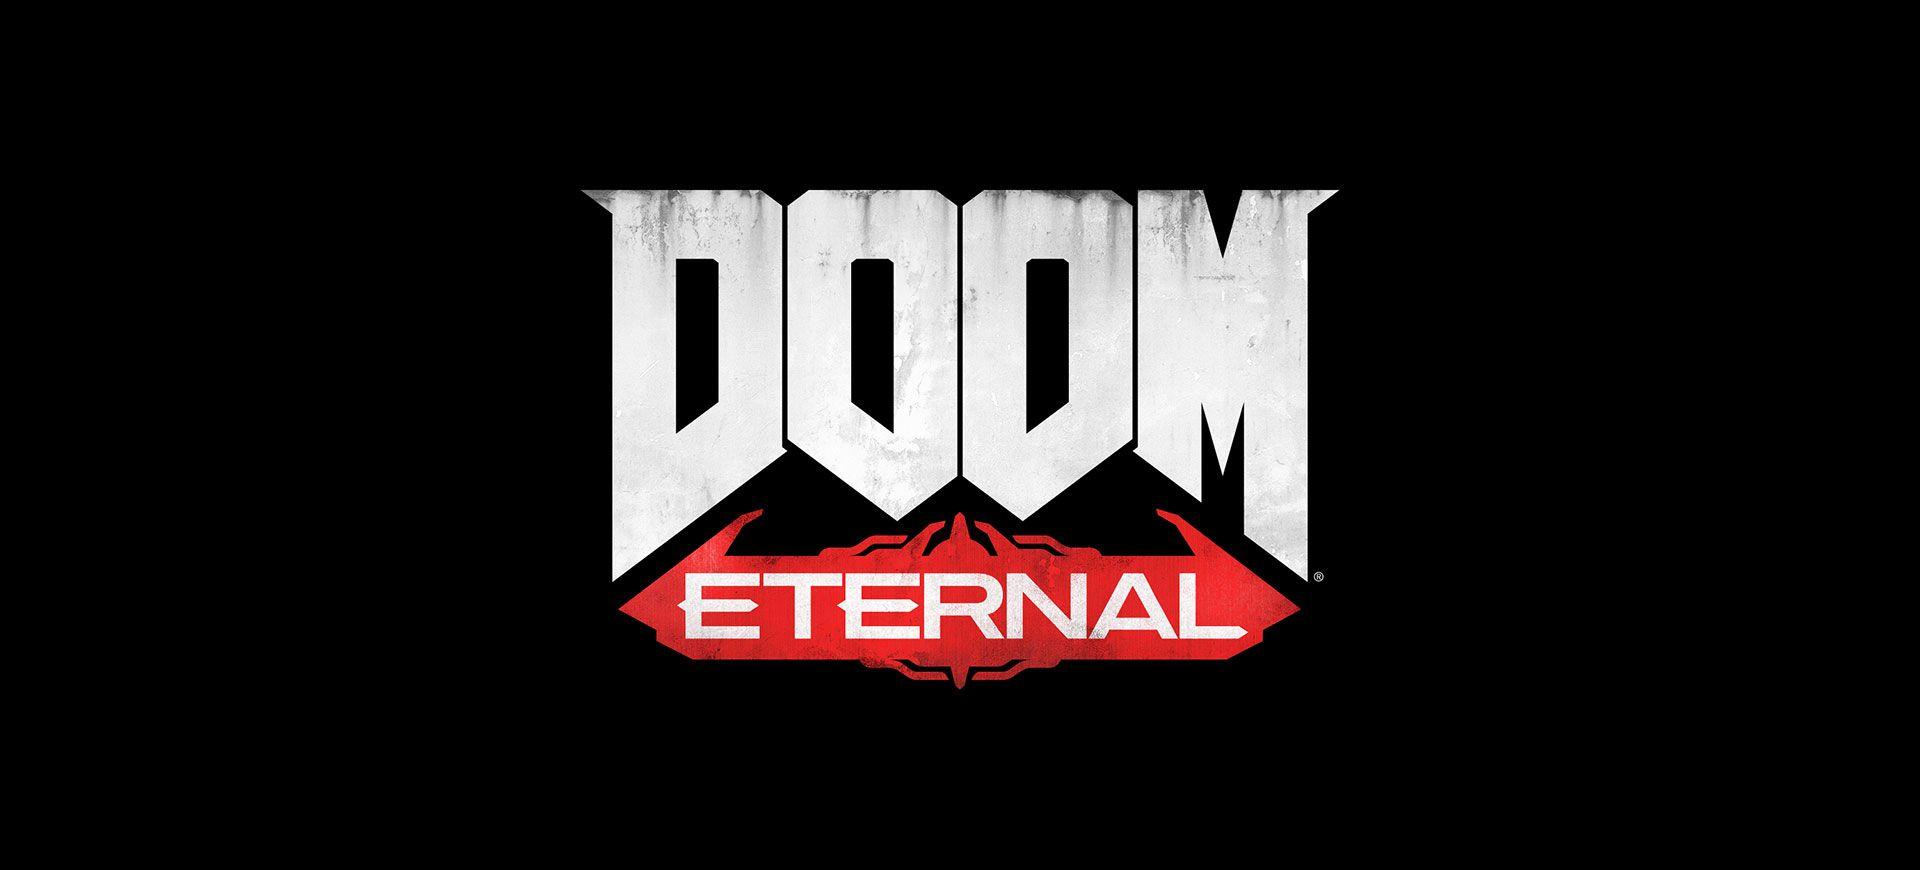 Eternal Logo - Alternate version of the Doom Eternal logo on Bethesda's site